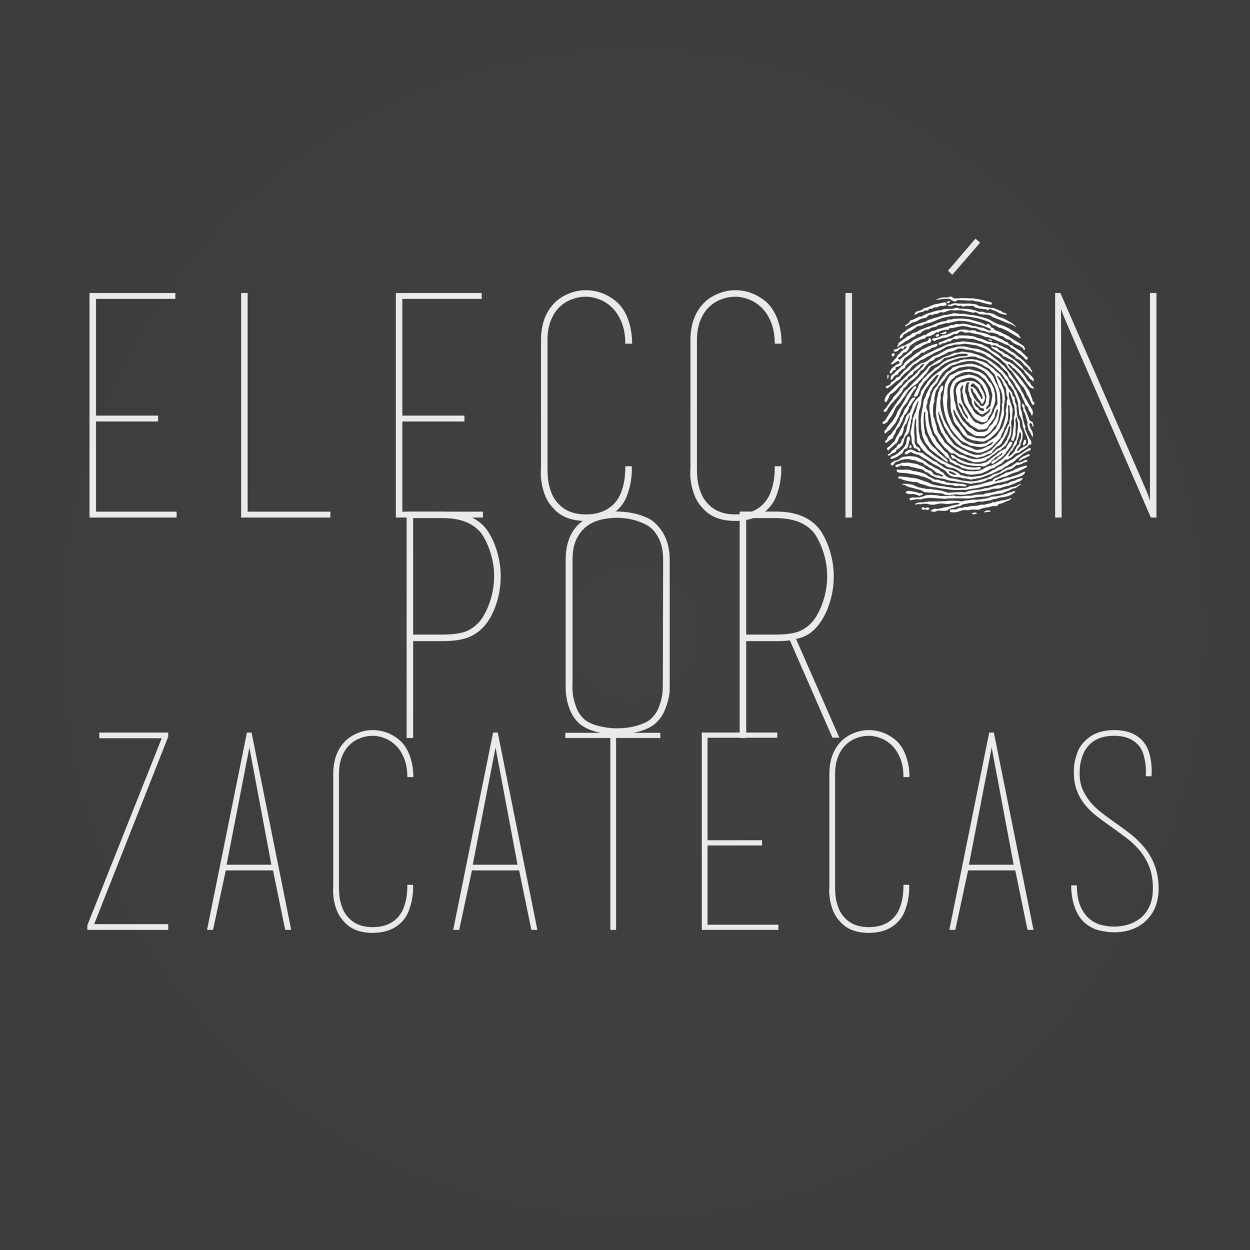 La elección es por Zacatecas y su gente.